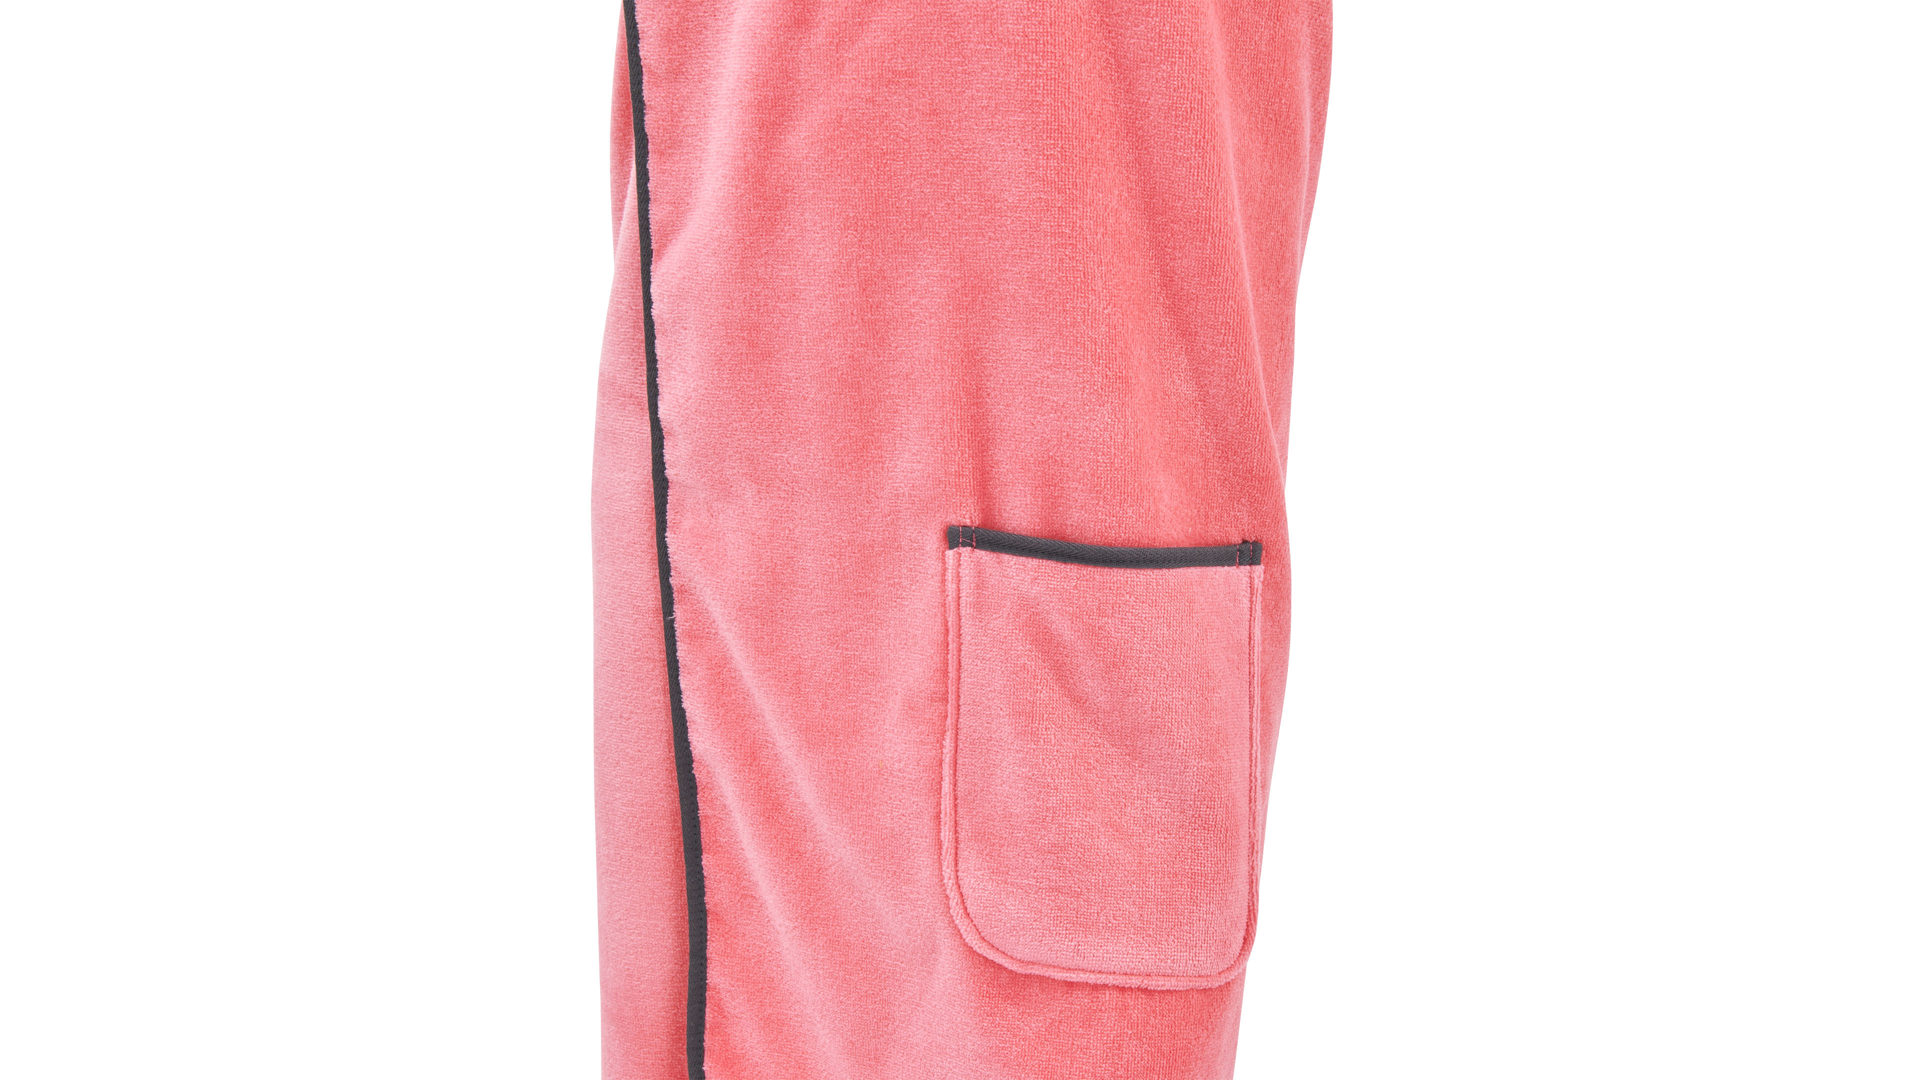 Saunahandtuch Done.® aus Stoff in Pink done.® Saunakilt blossomfarbene Baumwolle – ca. 80 x 140 cm